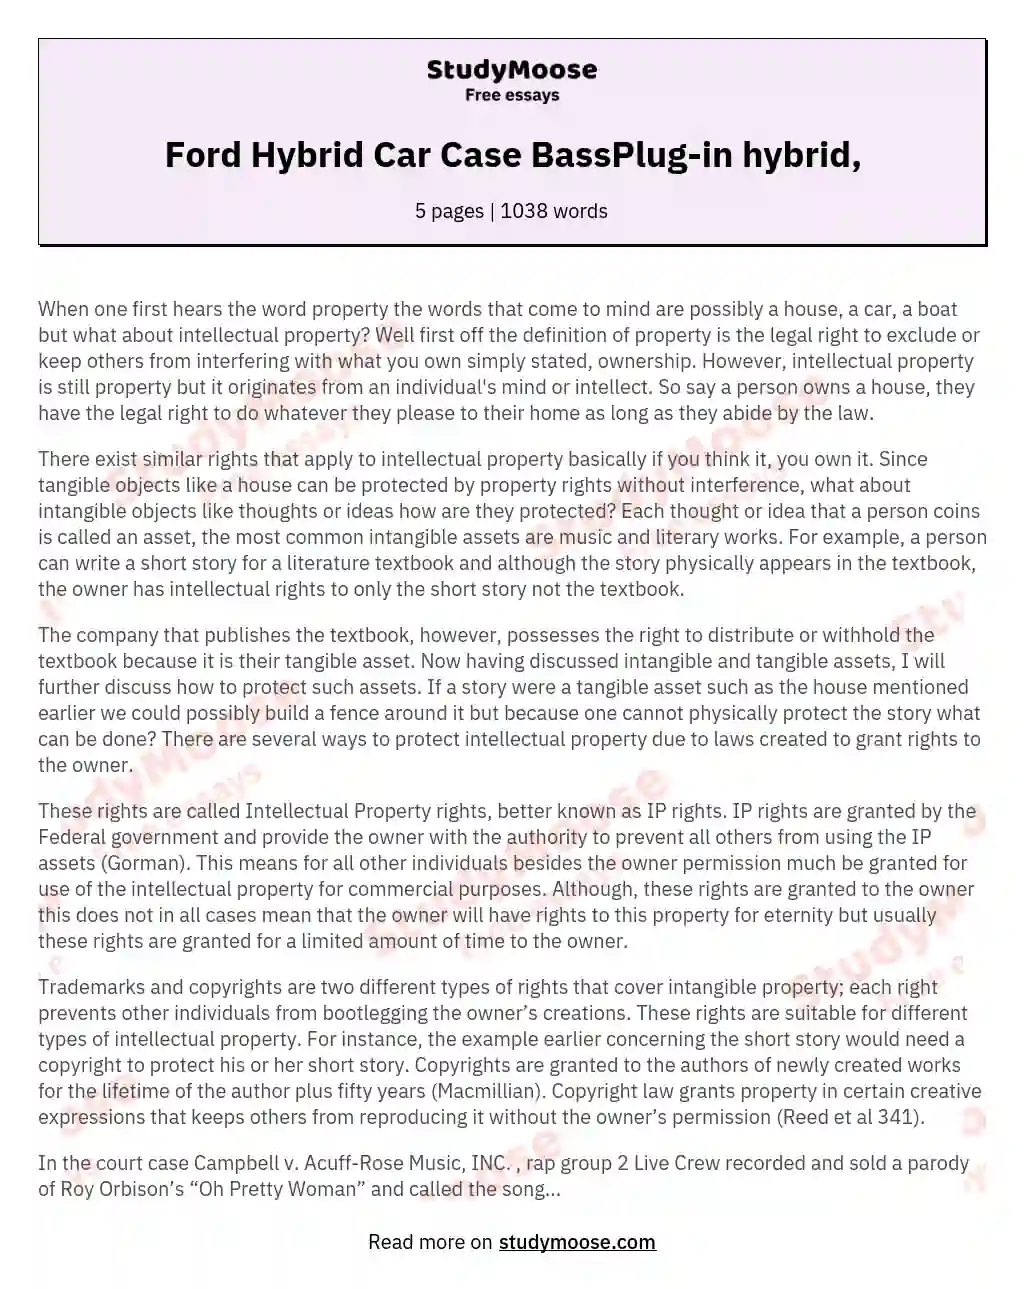 Ford Hybrid Car Case BassPlug-in hybrid, essay